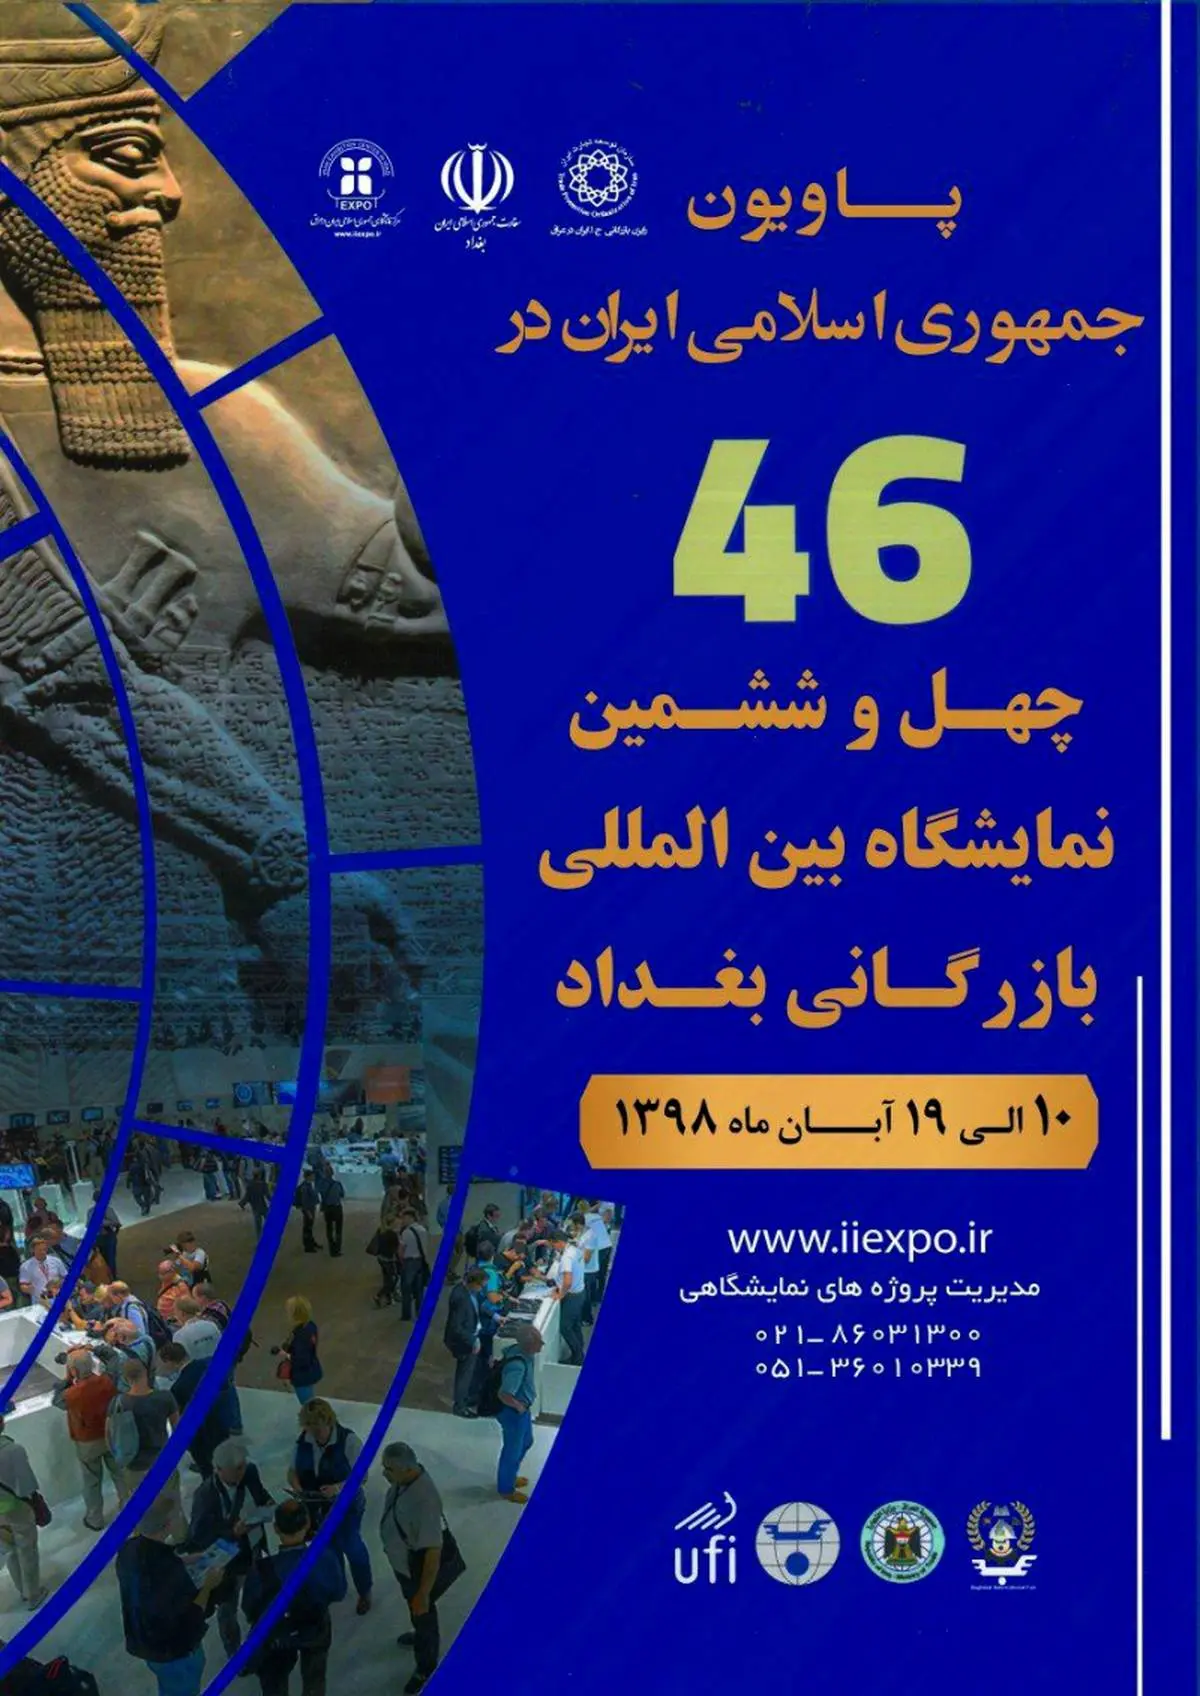 بزرگ‌ترین رویداد بازرگانی‌ عراق 10 آبان ماه امسال آغاز می‌شود/ اختصاص 15 درصد از نمایشگاه بازرگانی بغداد به غرفه‌های ایرانی

